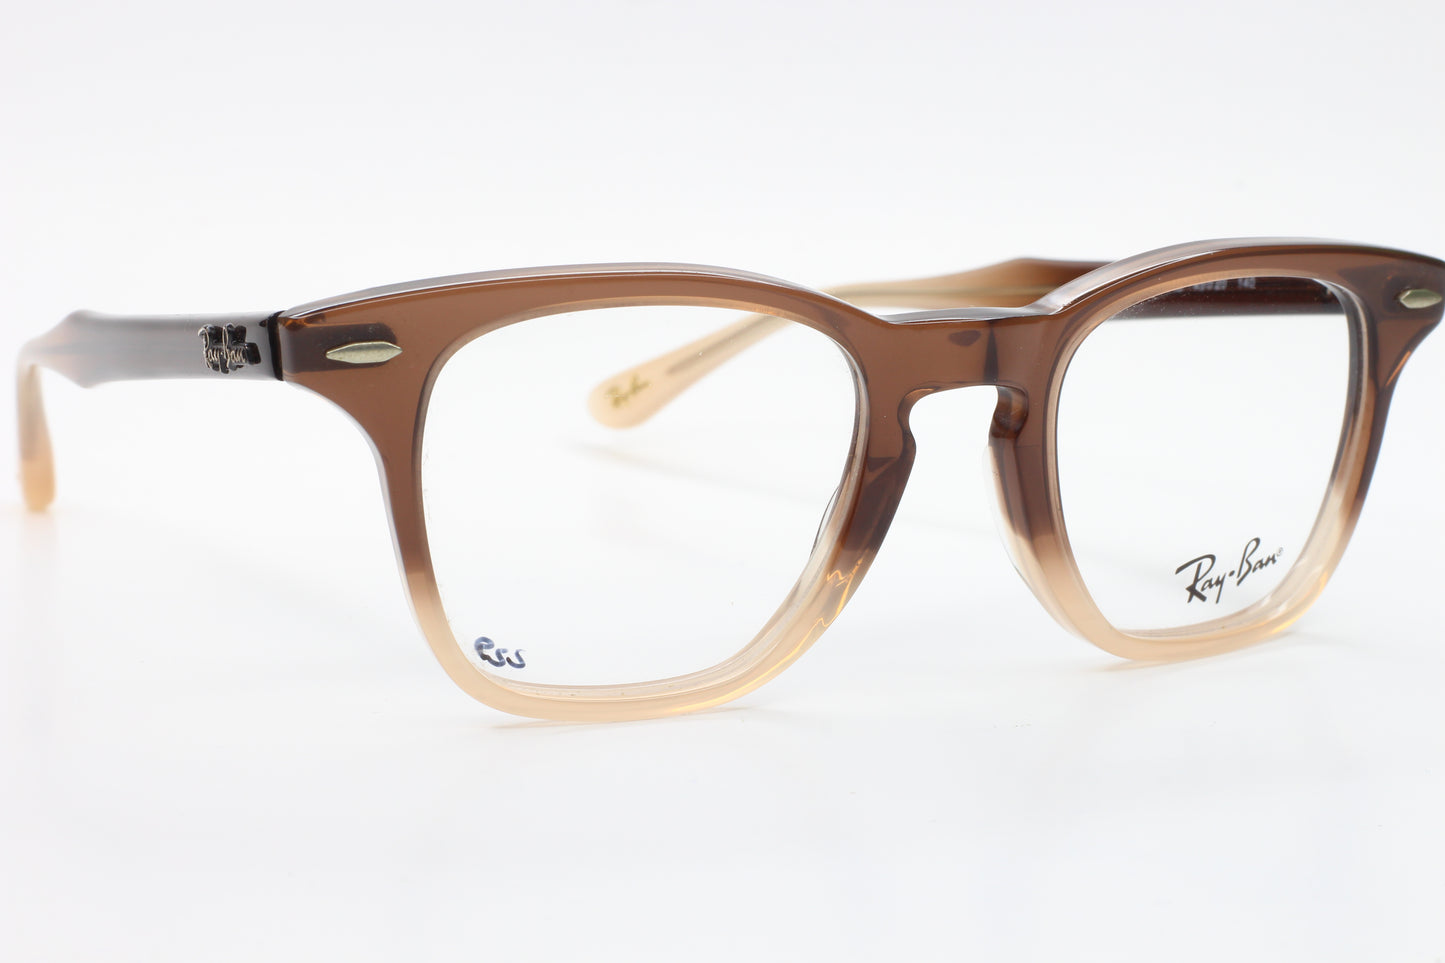 Ray-Ban RB5244 5043 Icons Brown Fade Wayfarer Eyeglasses -Ma